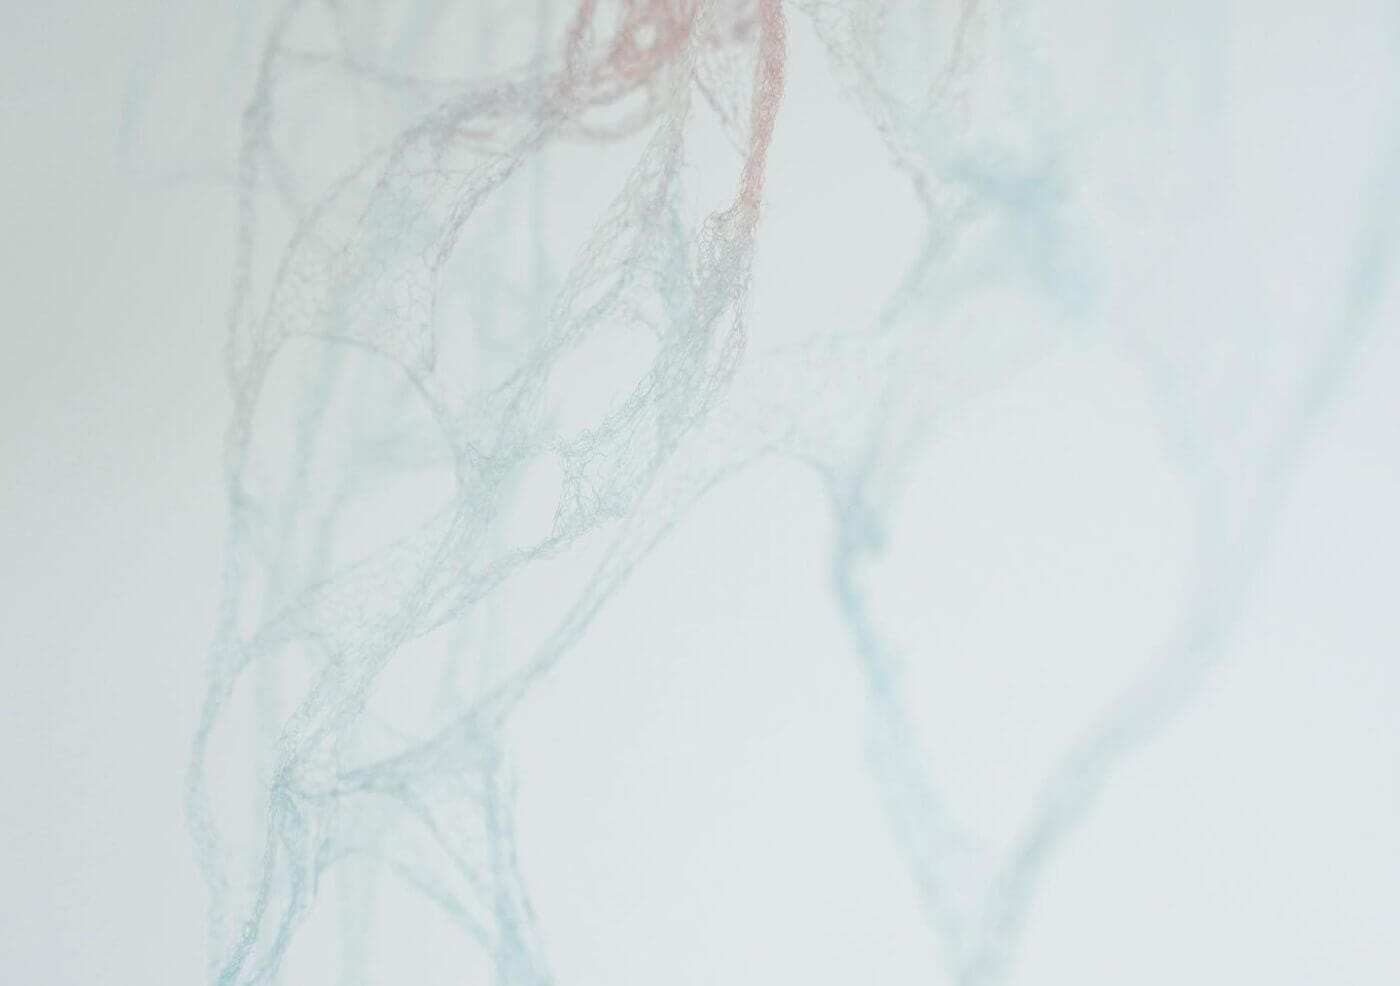 編むという行為により繊細な造形をつくり出す谷口聡子の作品展「自己に由る 」、GULIGULIにて。